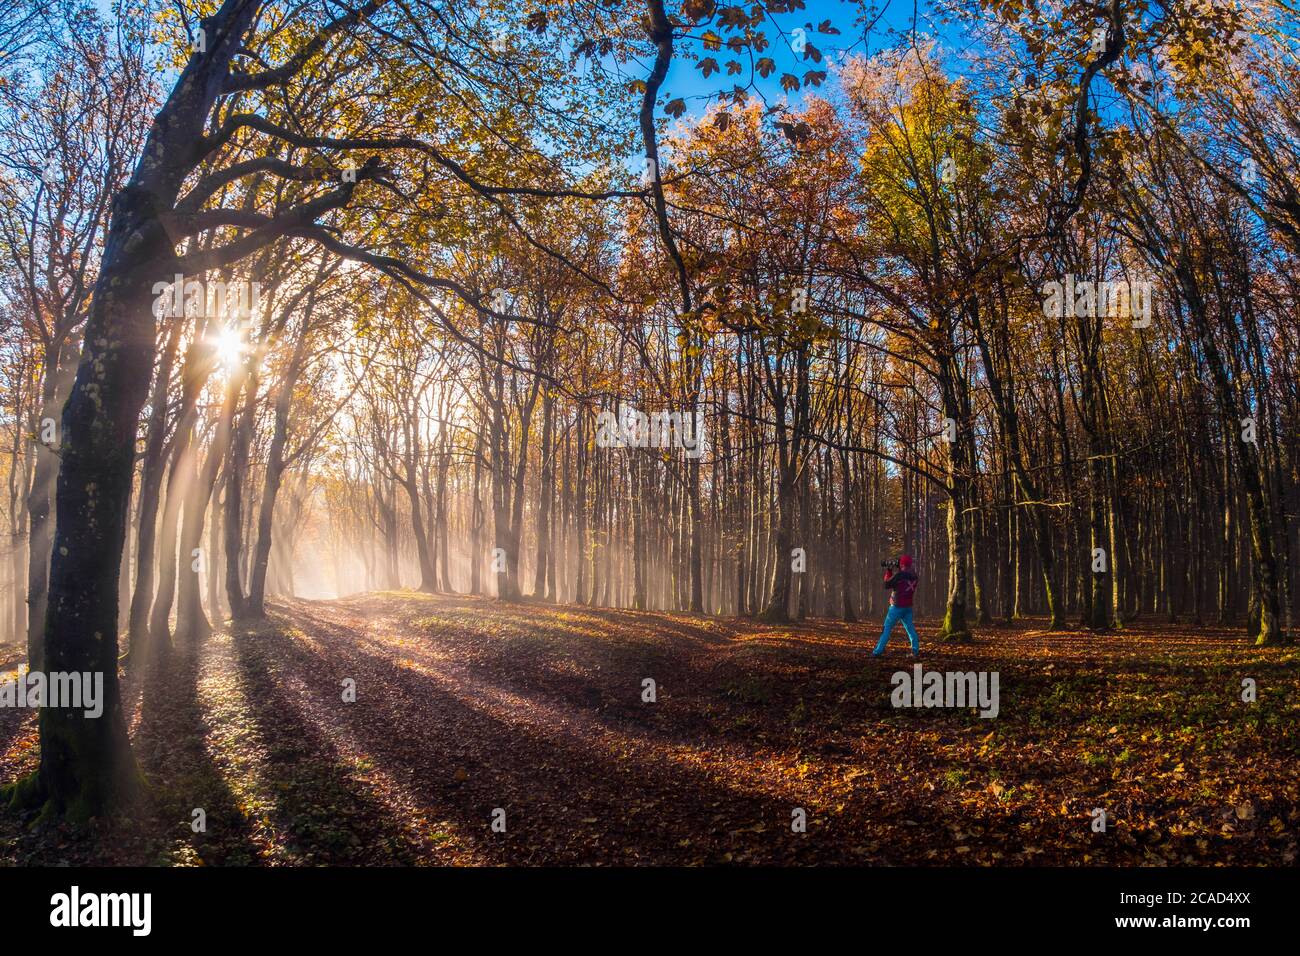 Parc national de Foreste Casentinesi, Badia Prataglia, Toscane, Italie, Europe. Une personne prend des photos dans le bois. Banque D'Images